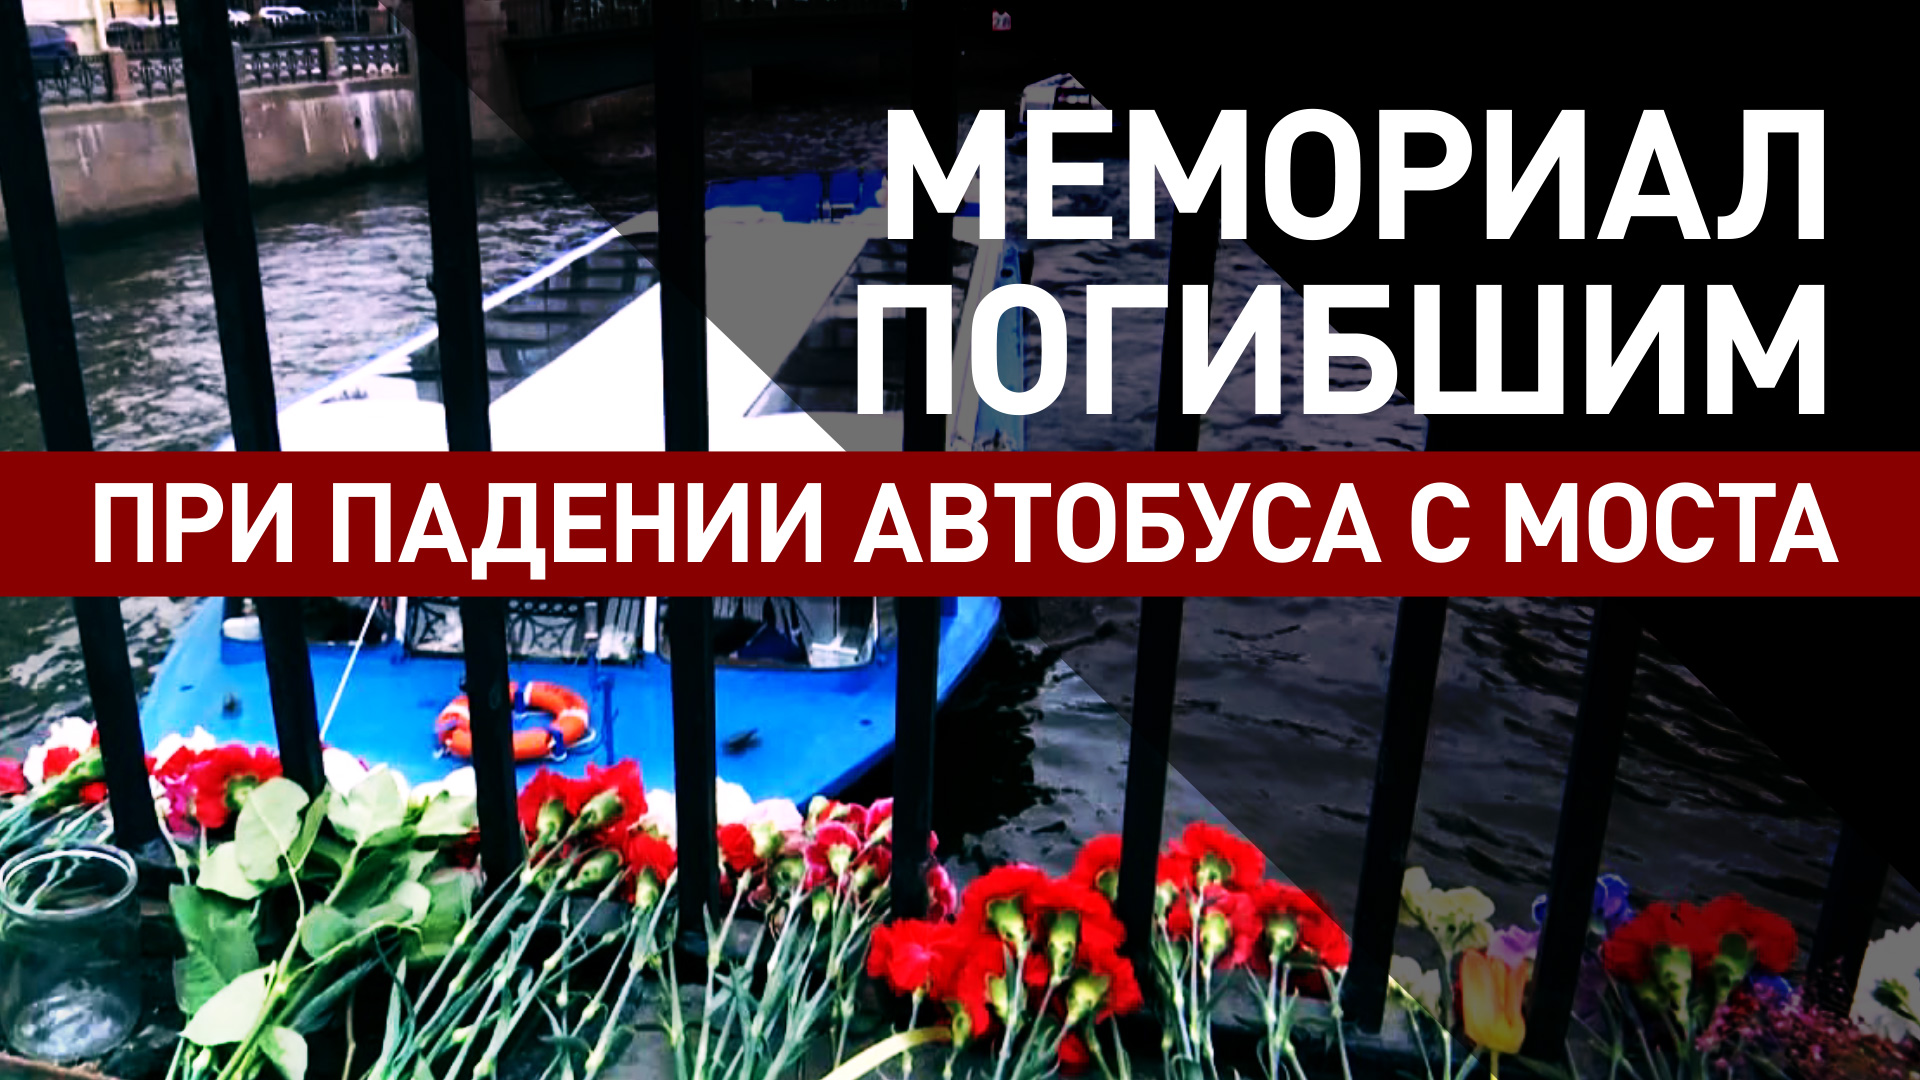 Жители Санкт-Петербурга возлагают цветы в память о погибших при падении автобуса с моста